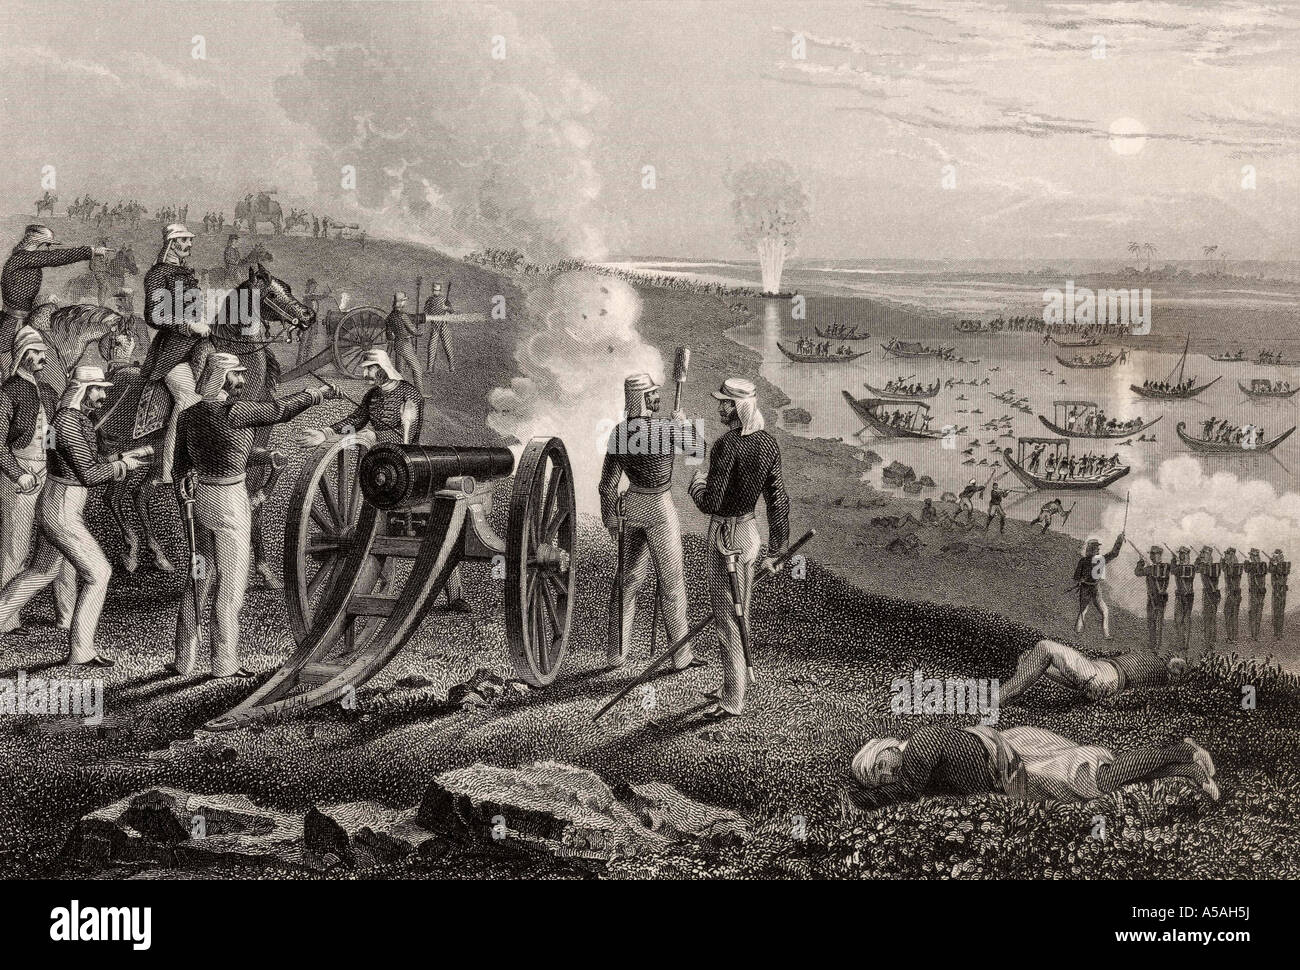 Major Eyre alla guida dei ribelli Oude da Allahabad, 1857. Dalla Storia del Mutinismo indiano, pubblicato nel 1858. Foto Stock